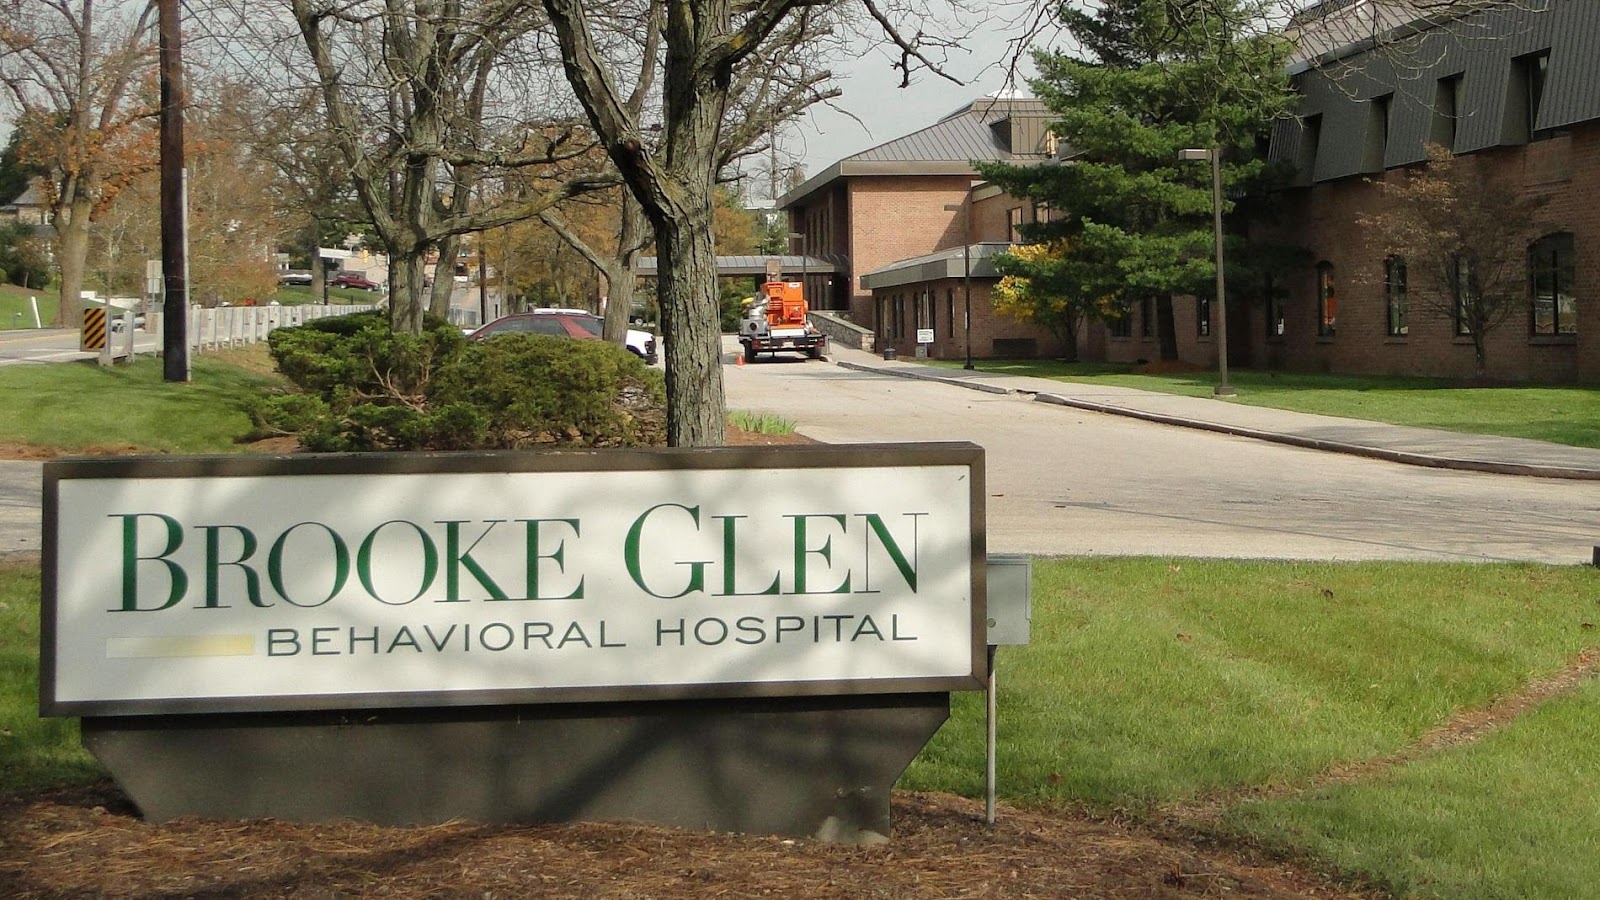 Brooke Glen Behavioral Hospital